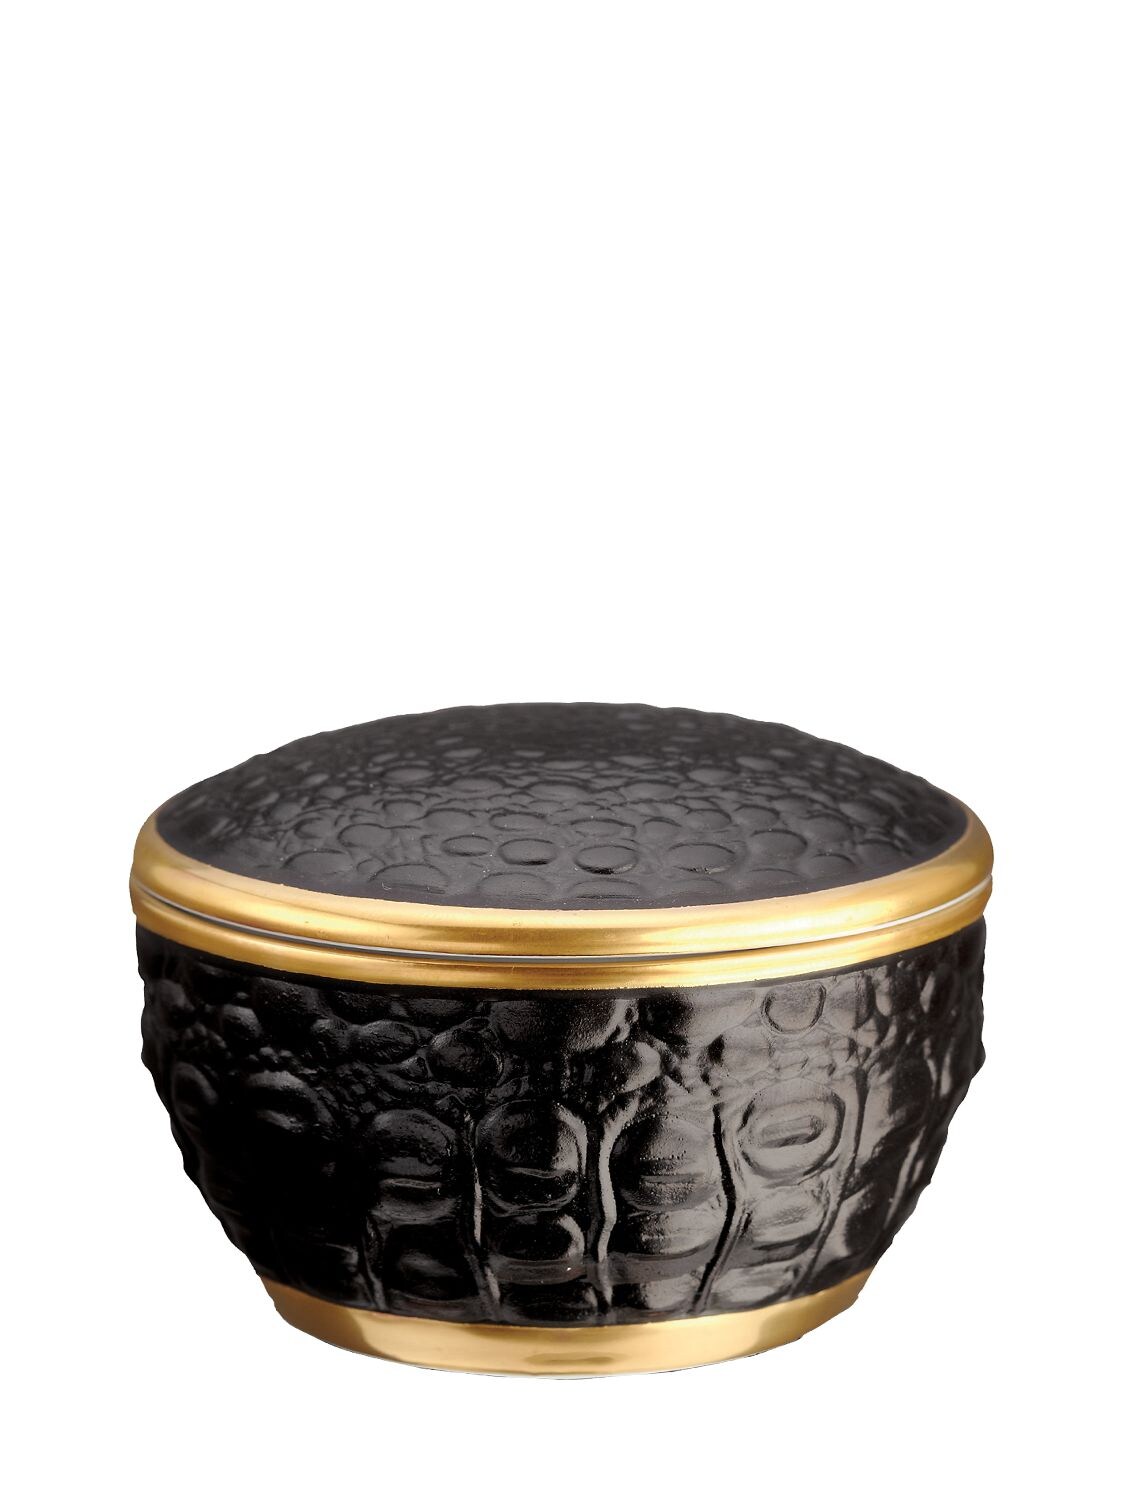 L'OBJET “CROCODILE”陶瓷盒子,73IVV7071-QKXBQ0SSR09MRA2